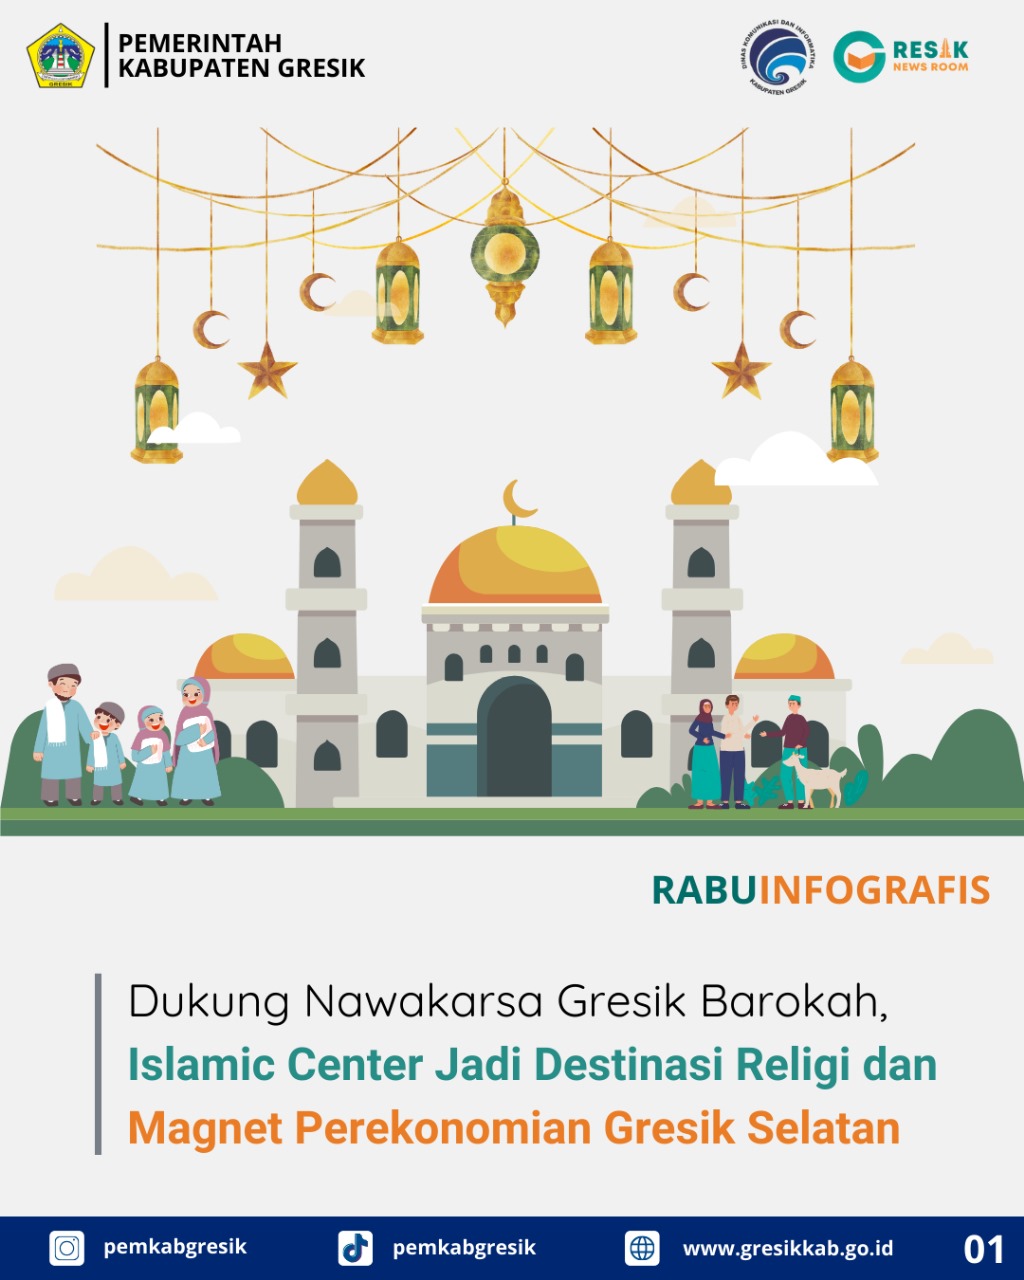 Dukung Nawakarsa Gresik Barokah, Islamic Center Jadi Destinasi Religi dan Magnet Perekonomian Gresik Selatan